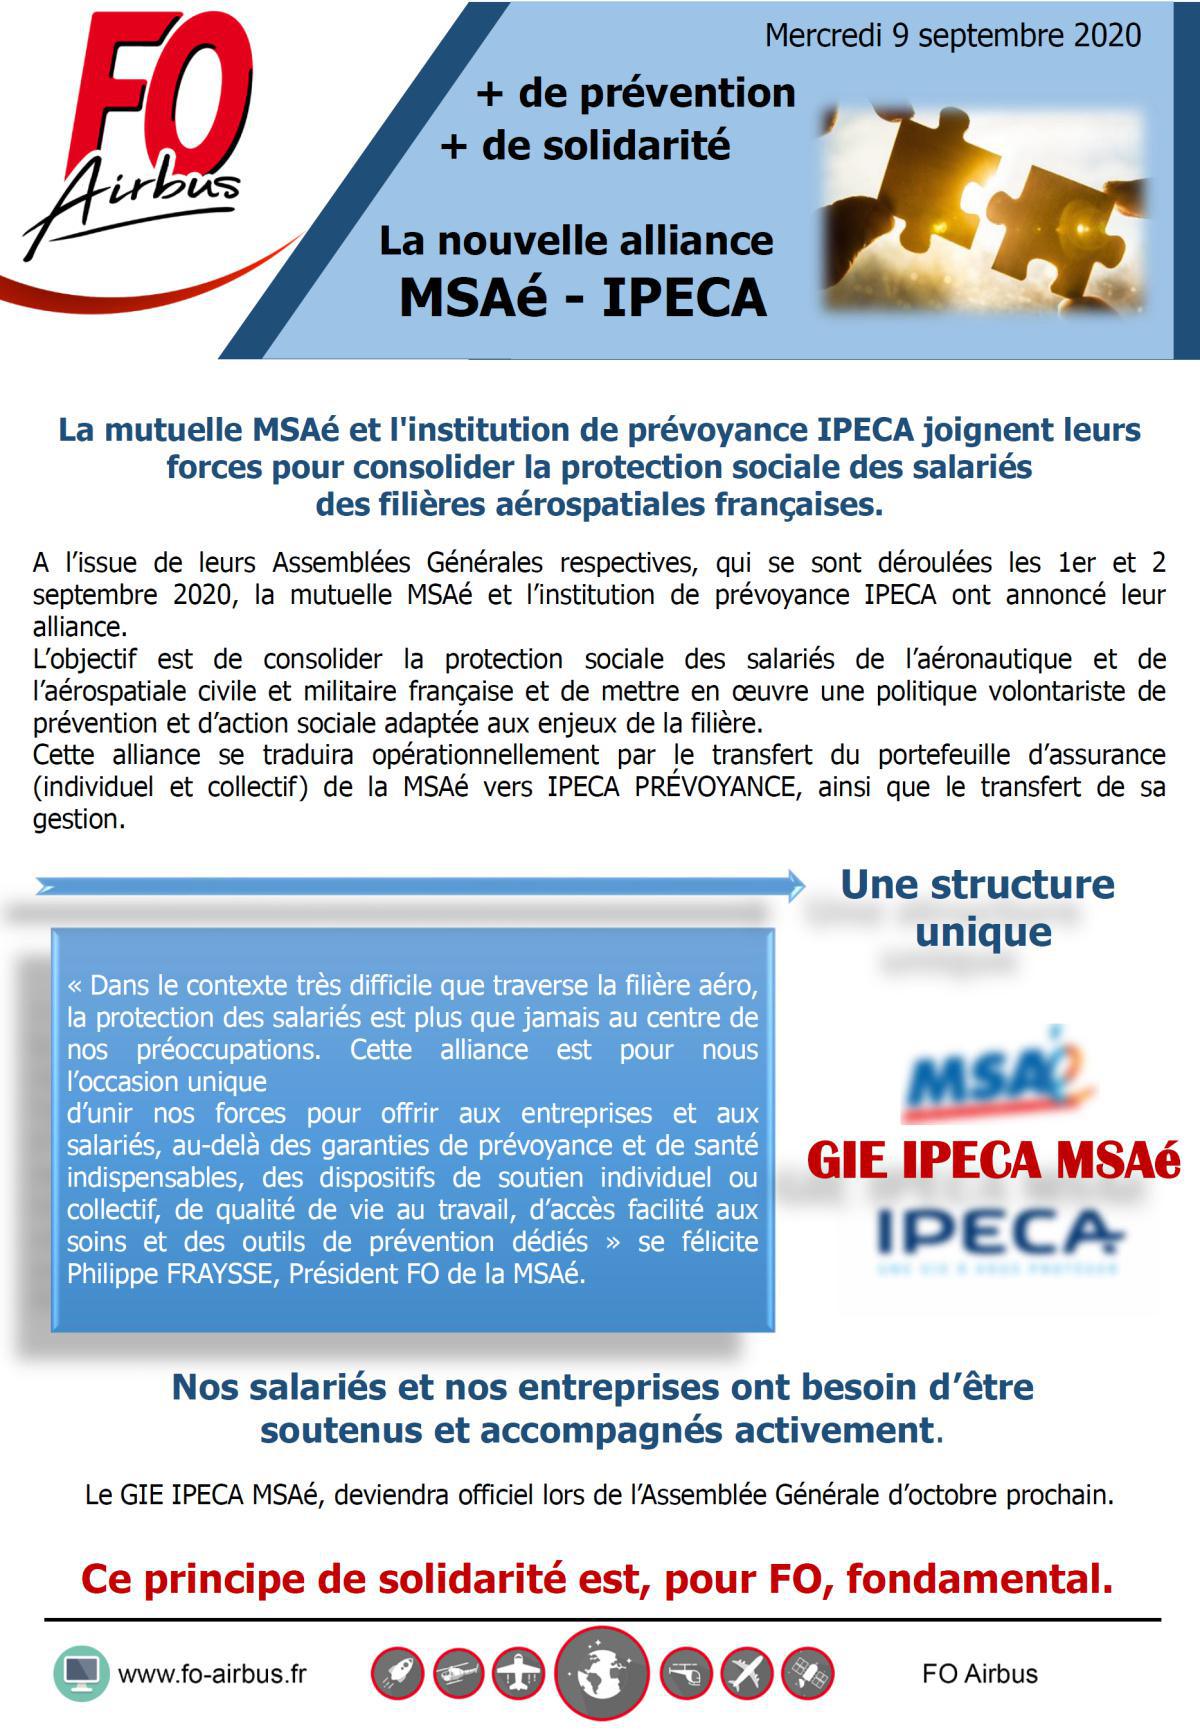 Alliance de la mutuelle MSAé et IPECA